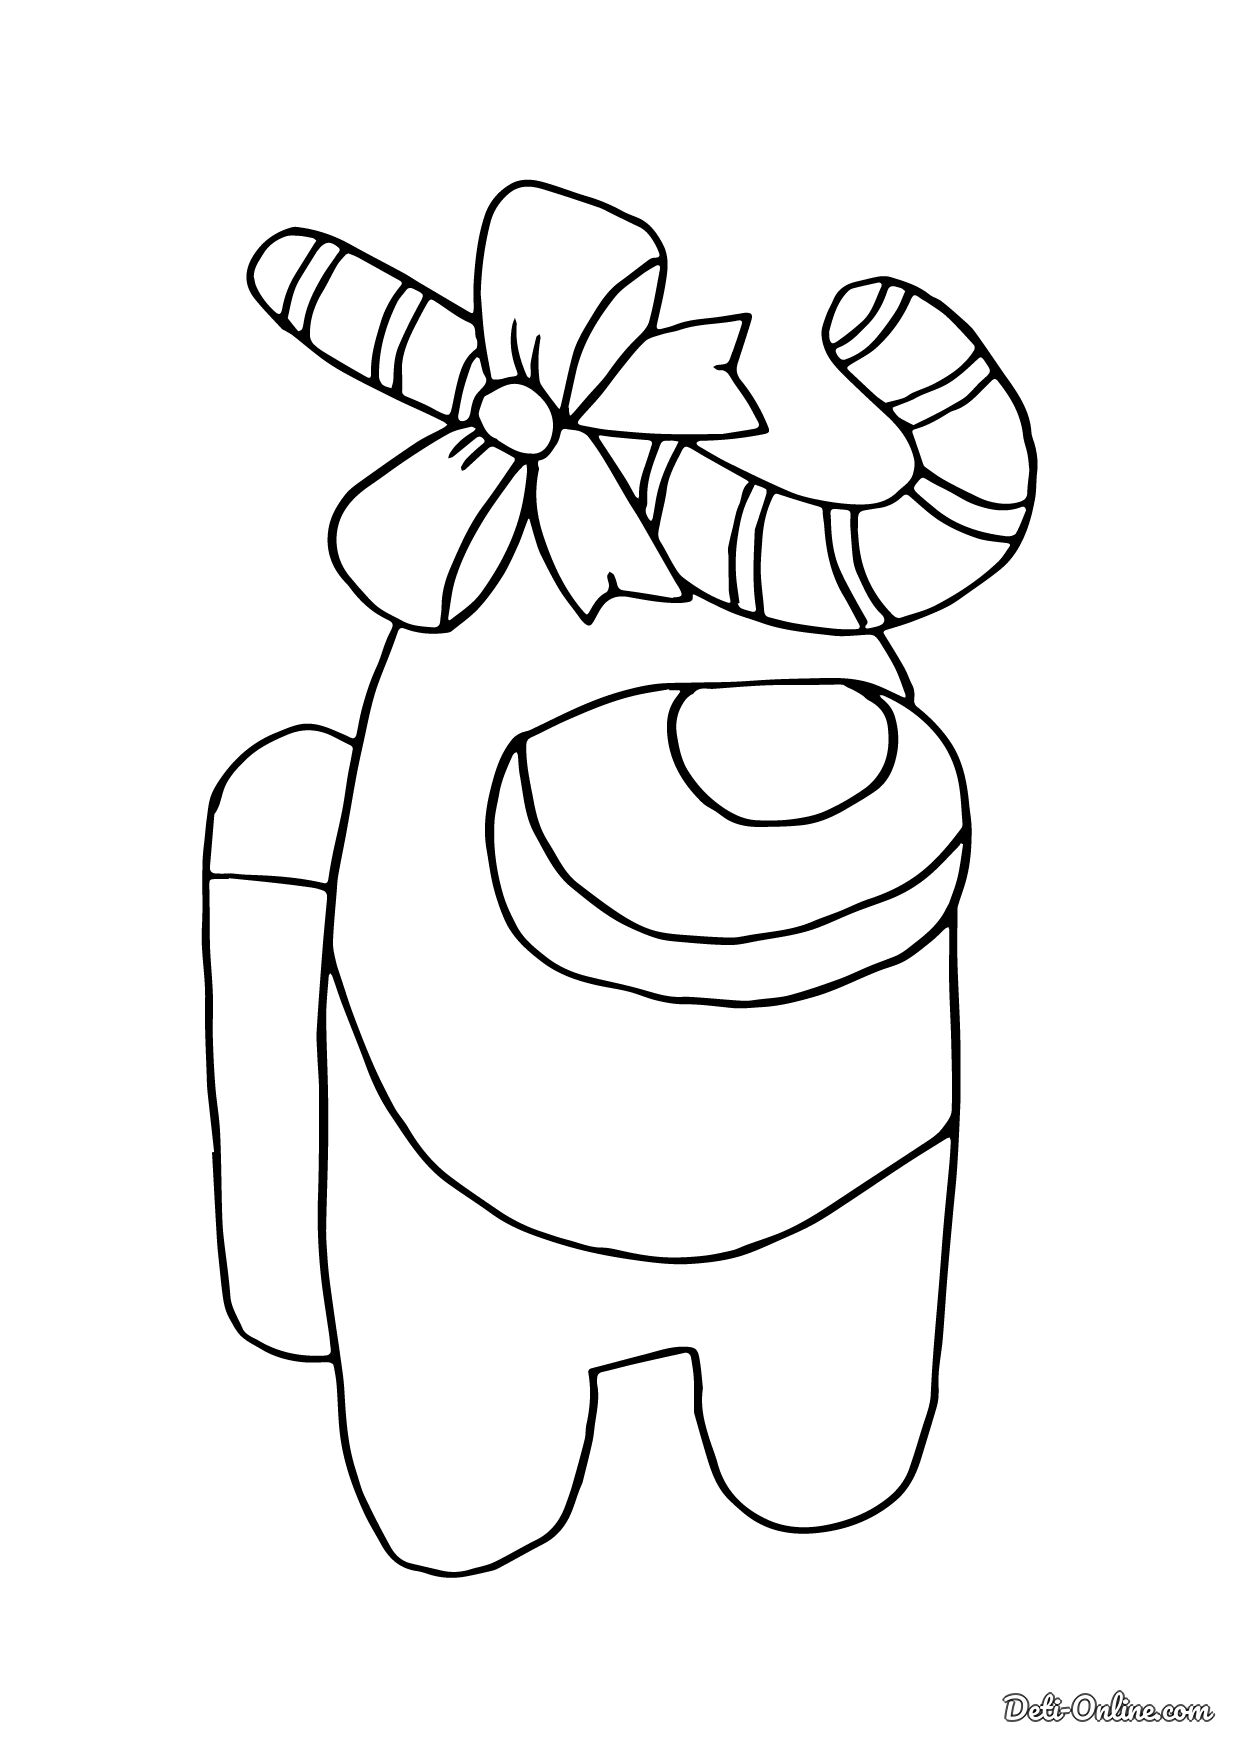 Персонаж Амонг Ас с рождественским леденцом на голове